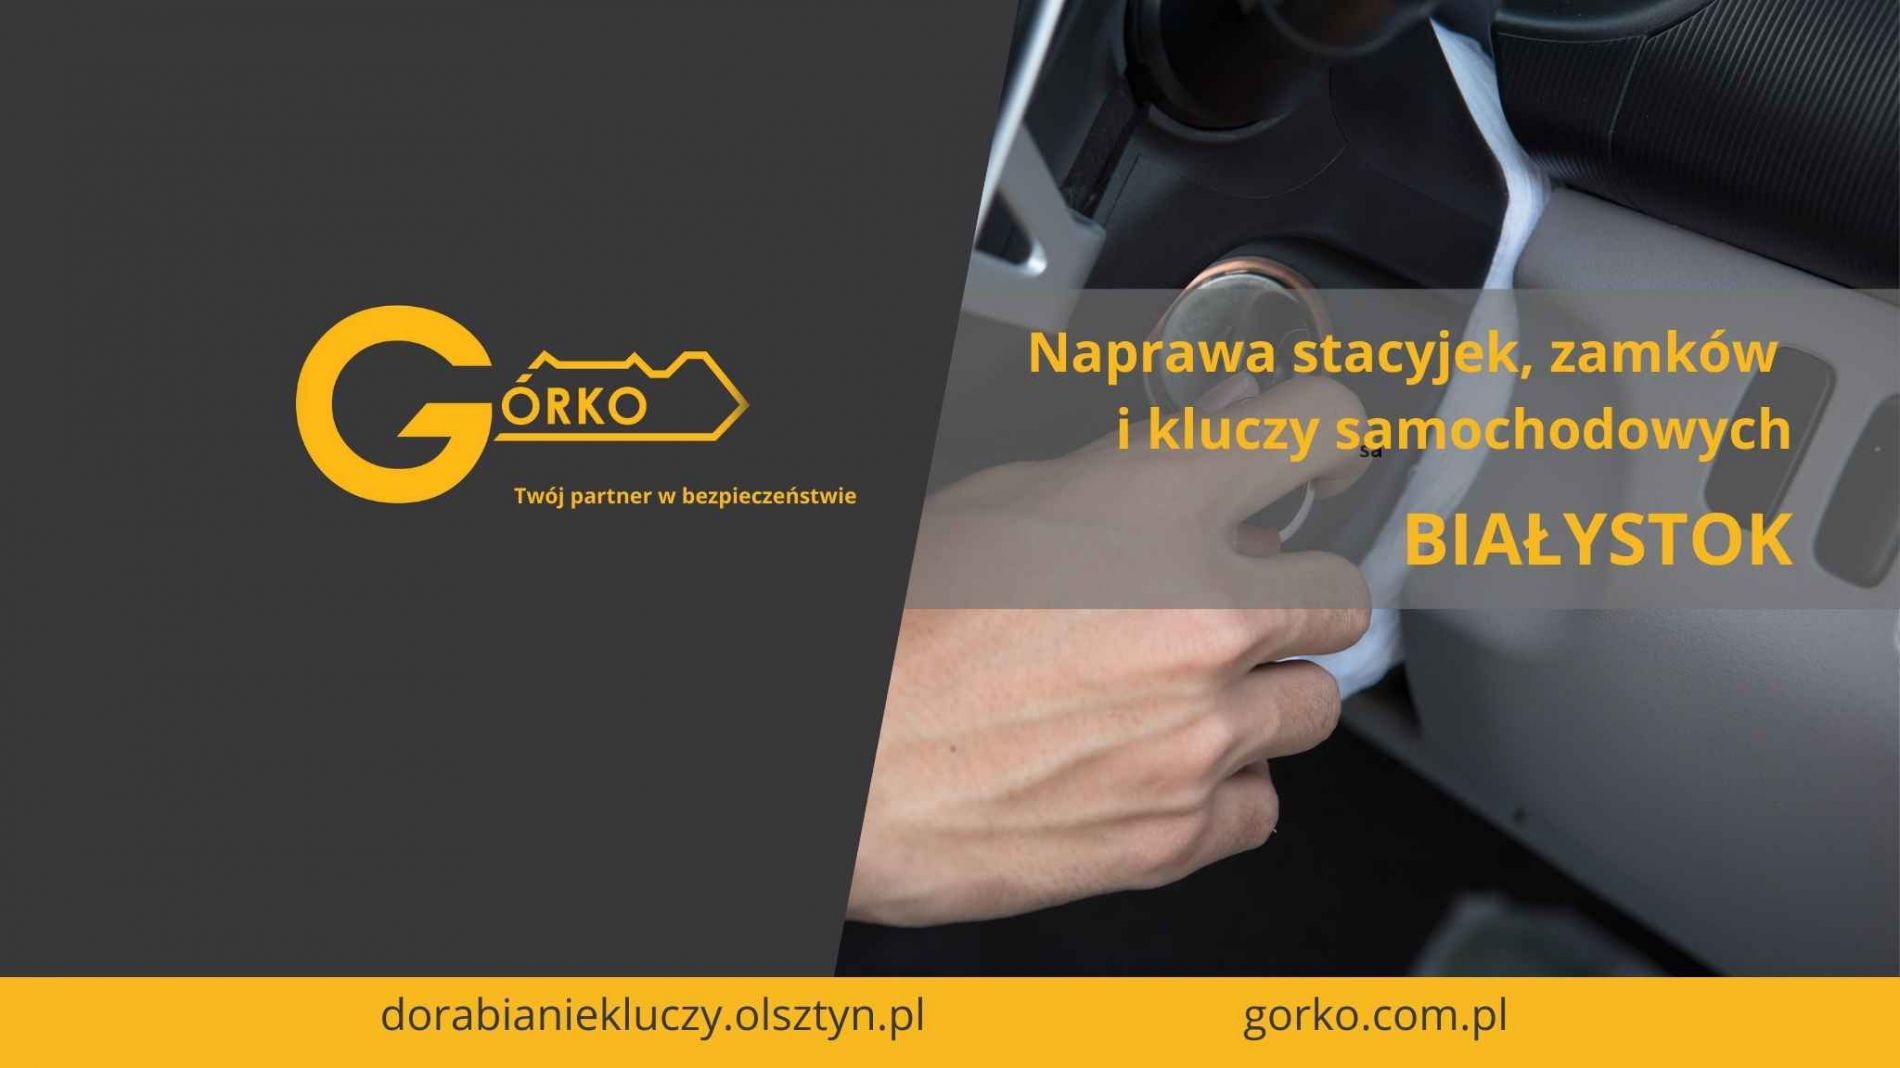 Naprawa stacyjek, zamków i kluczy samochodowych – Białystok (Usługa zdalna)